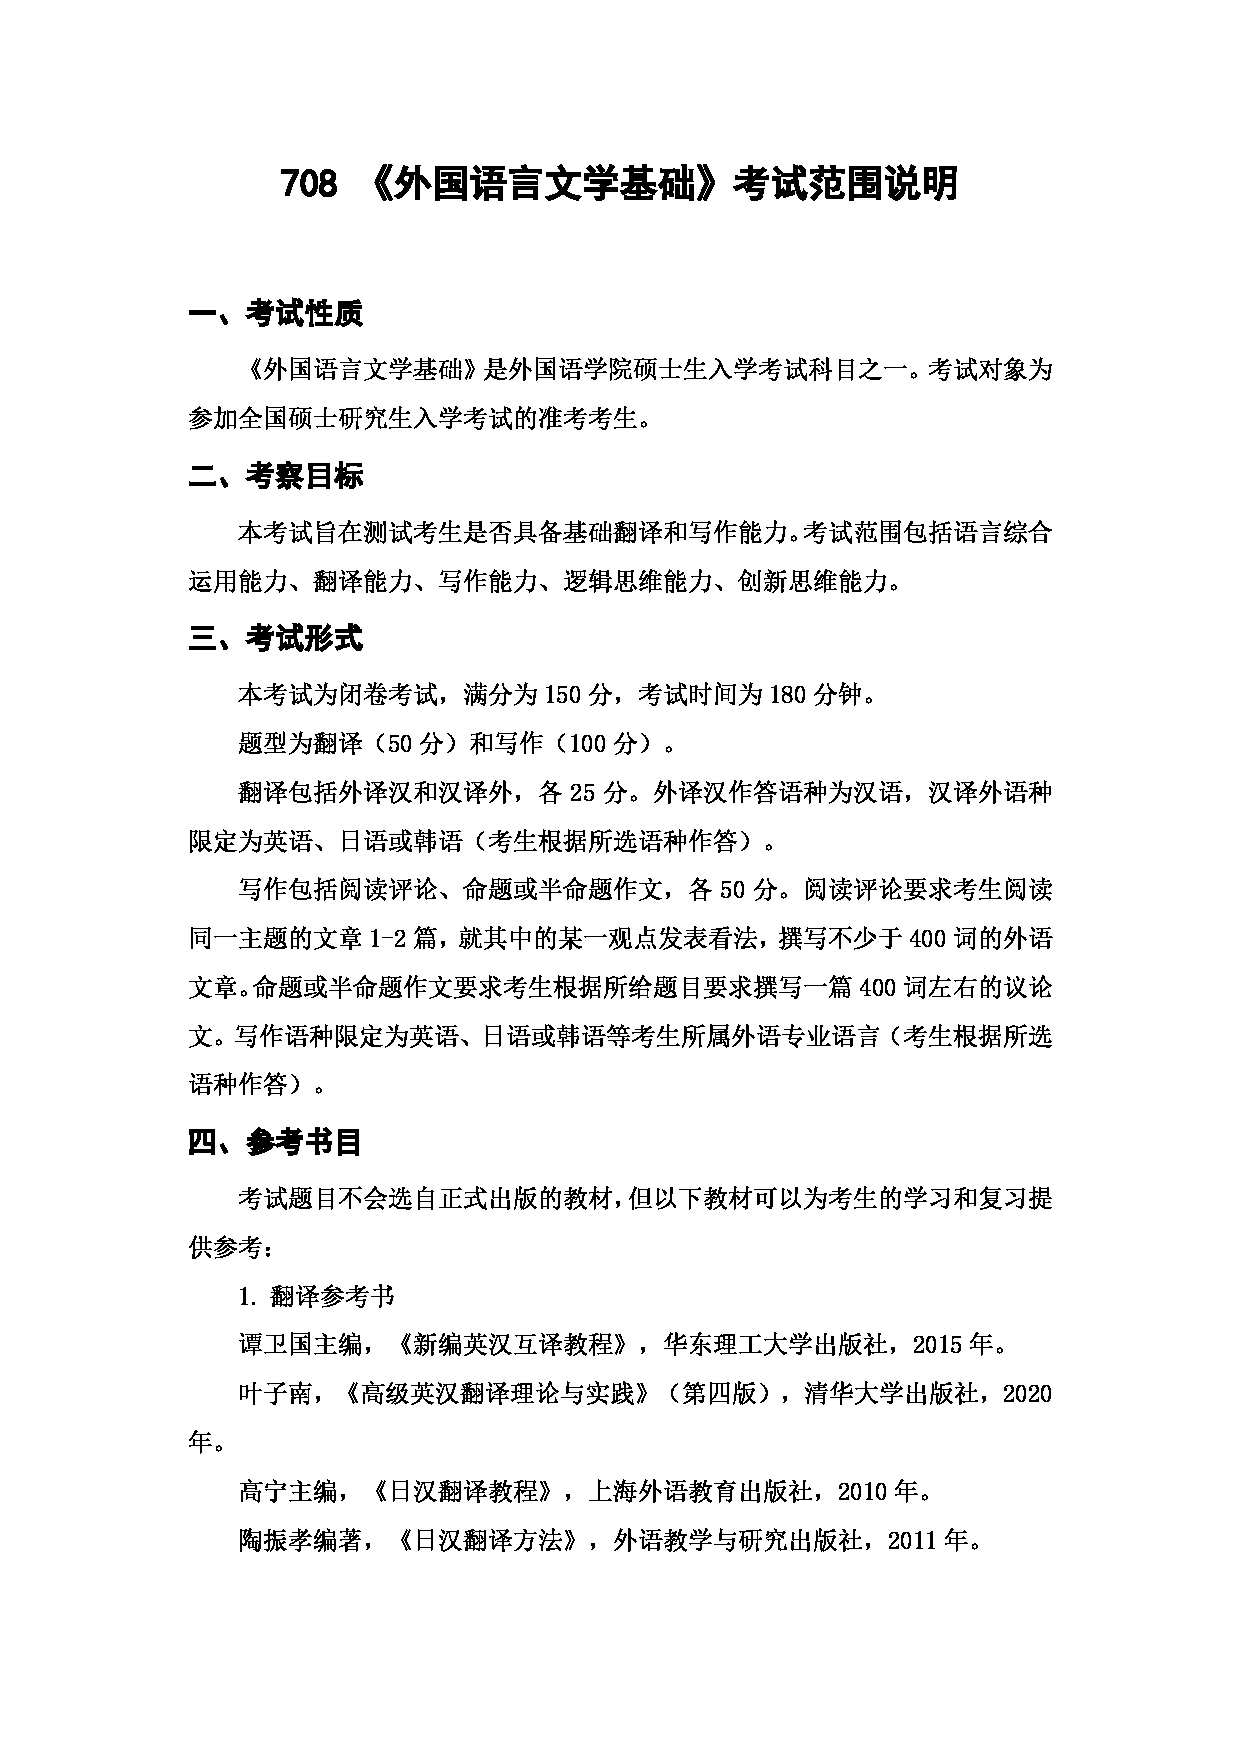 上海海洋大学2023年考研自命题科目 708《外国语言文学基础》 考试范围第1页